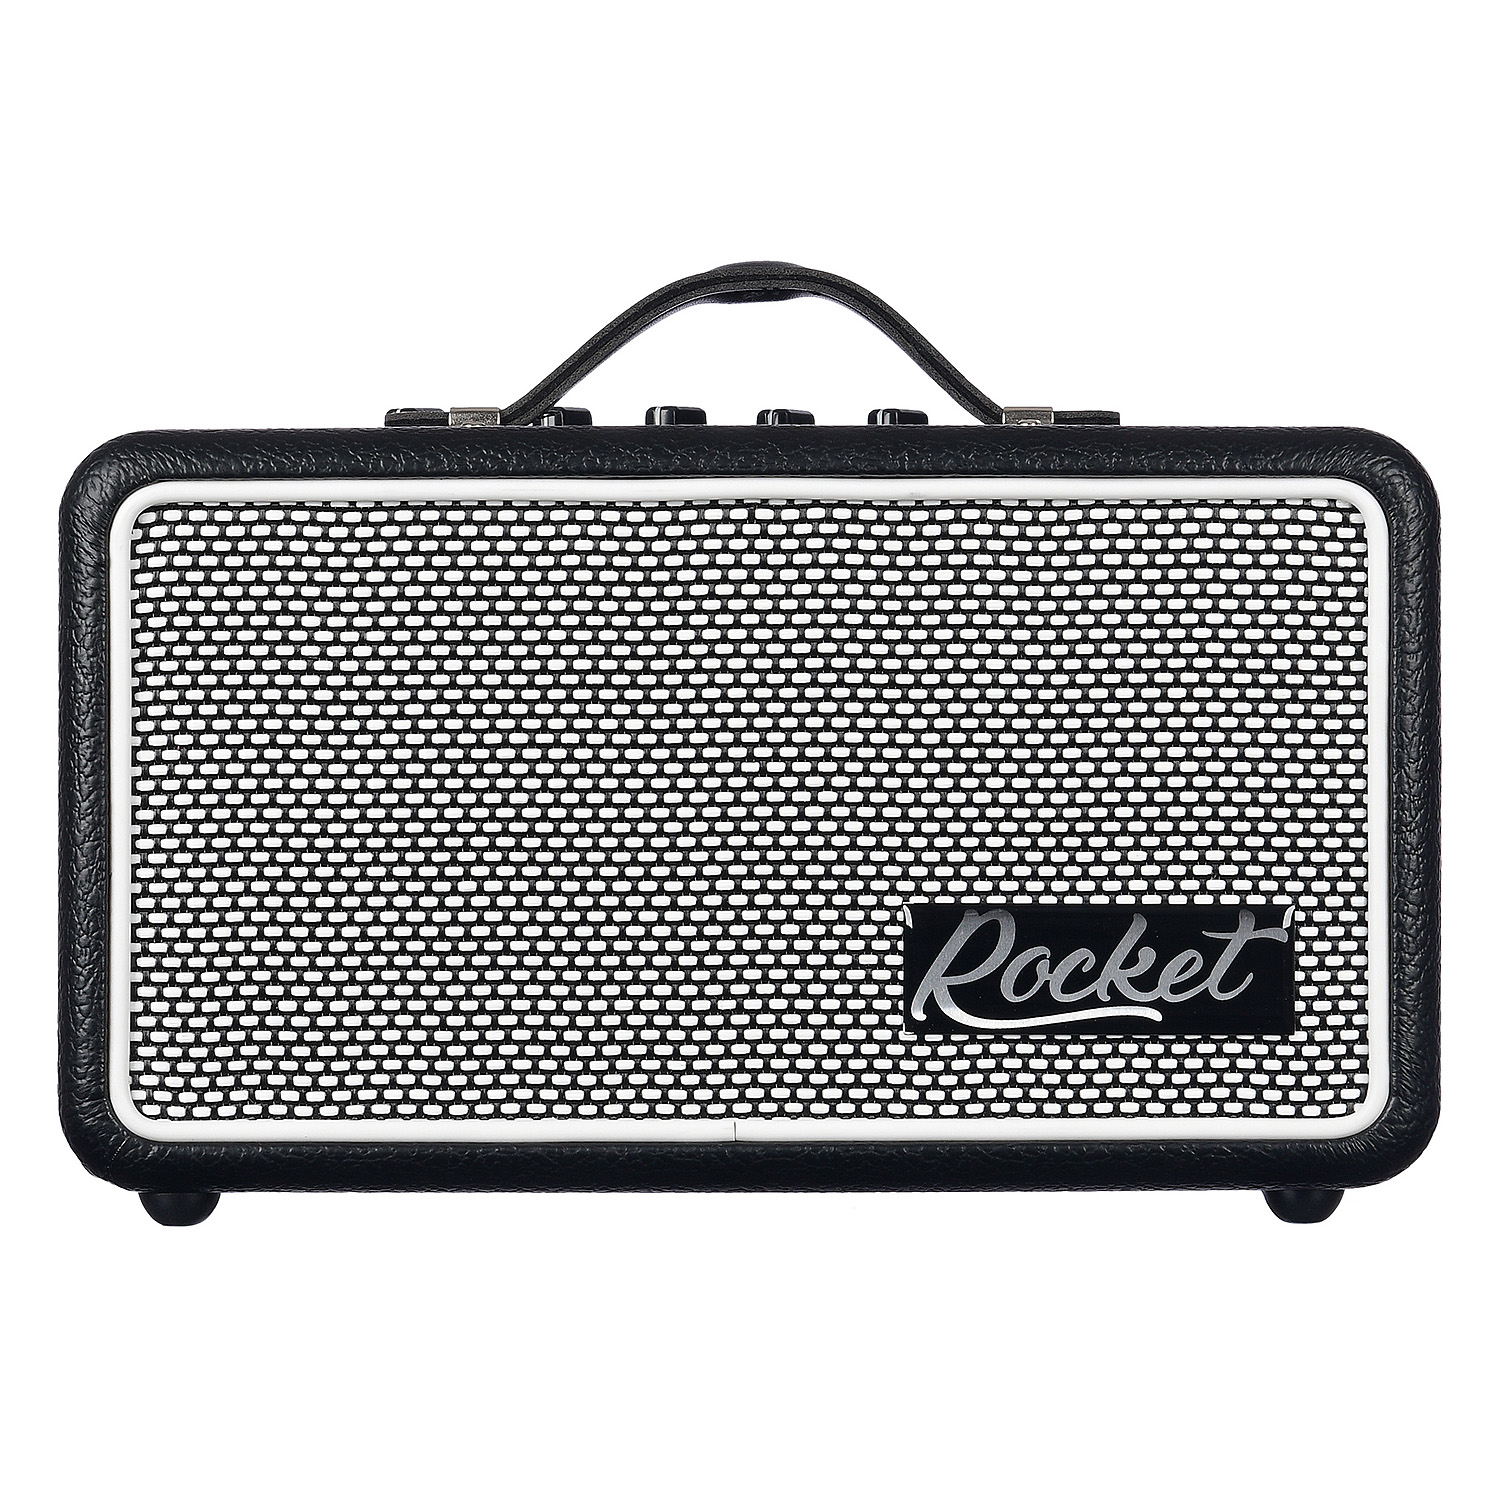 Rocket Hg-10 - портативный гитарный усилитель на батарейках, 10вт, Bluetooth